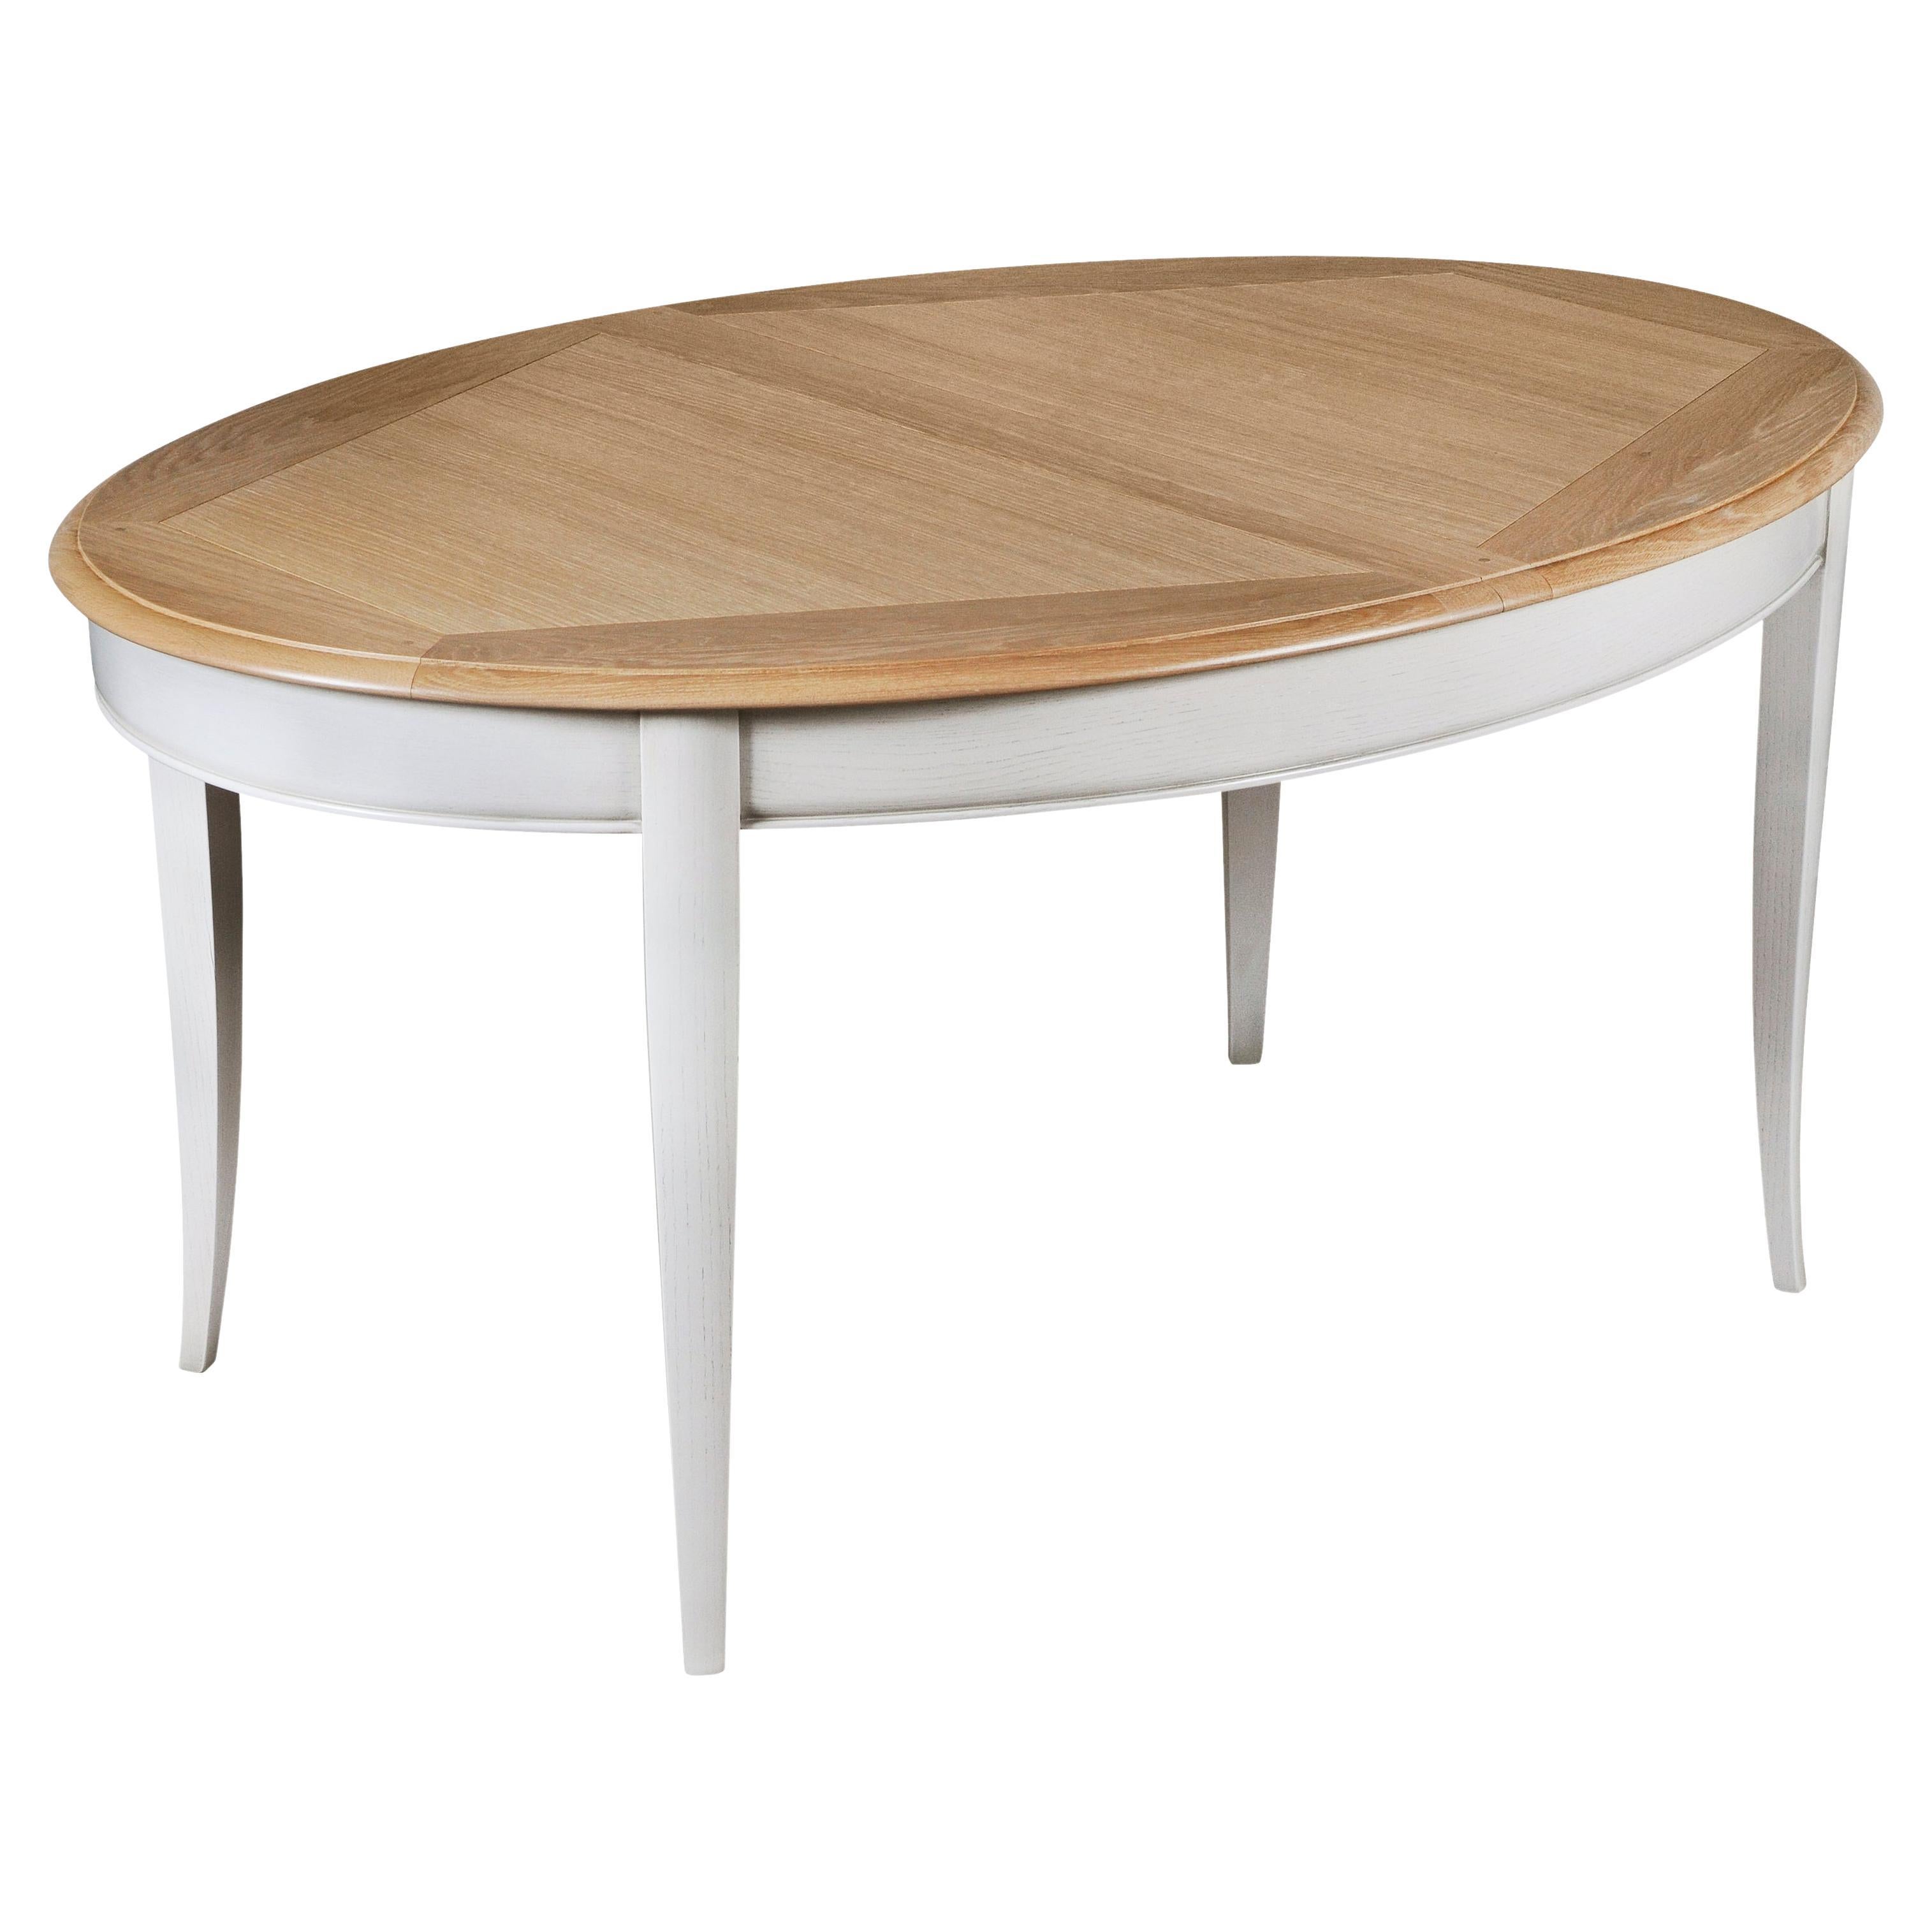 Ovaler Tisch aus Eiche, weiß geweißt und perlmuttgrau lackiert, mit 2 Verlängerungen